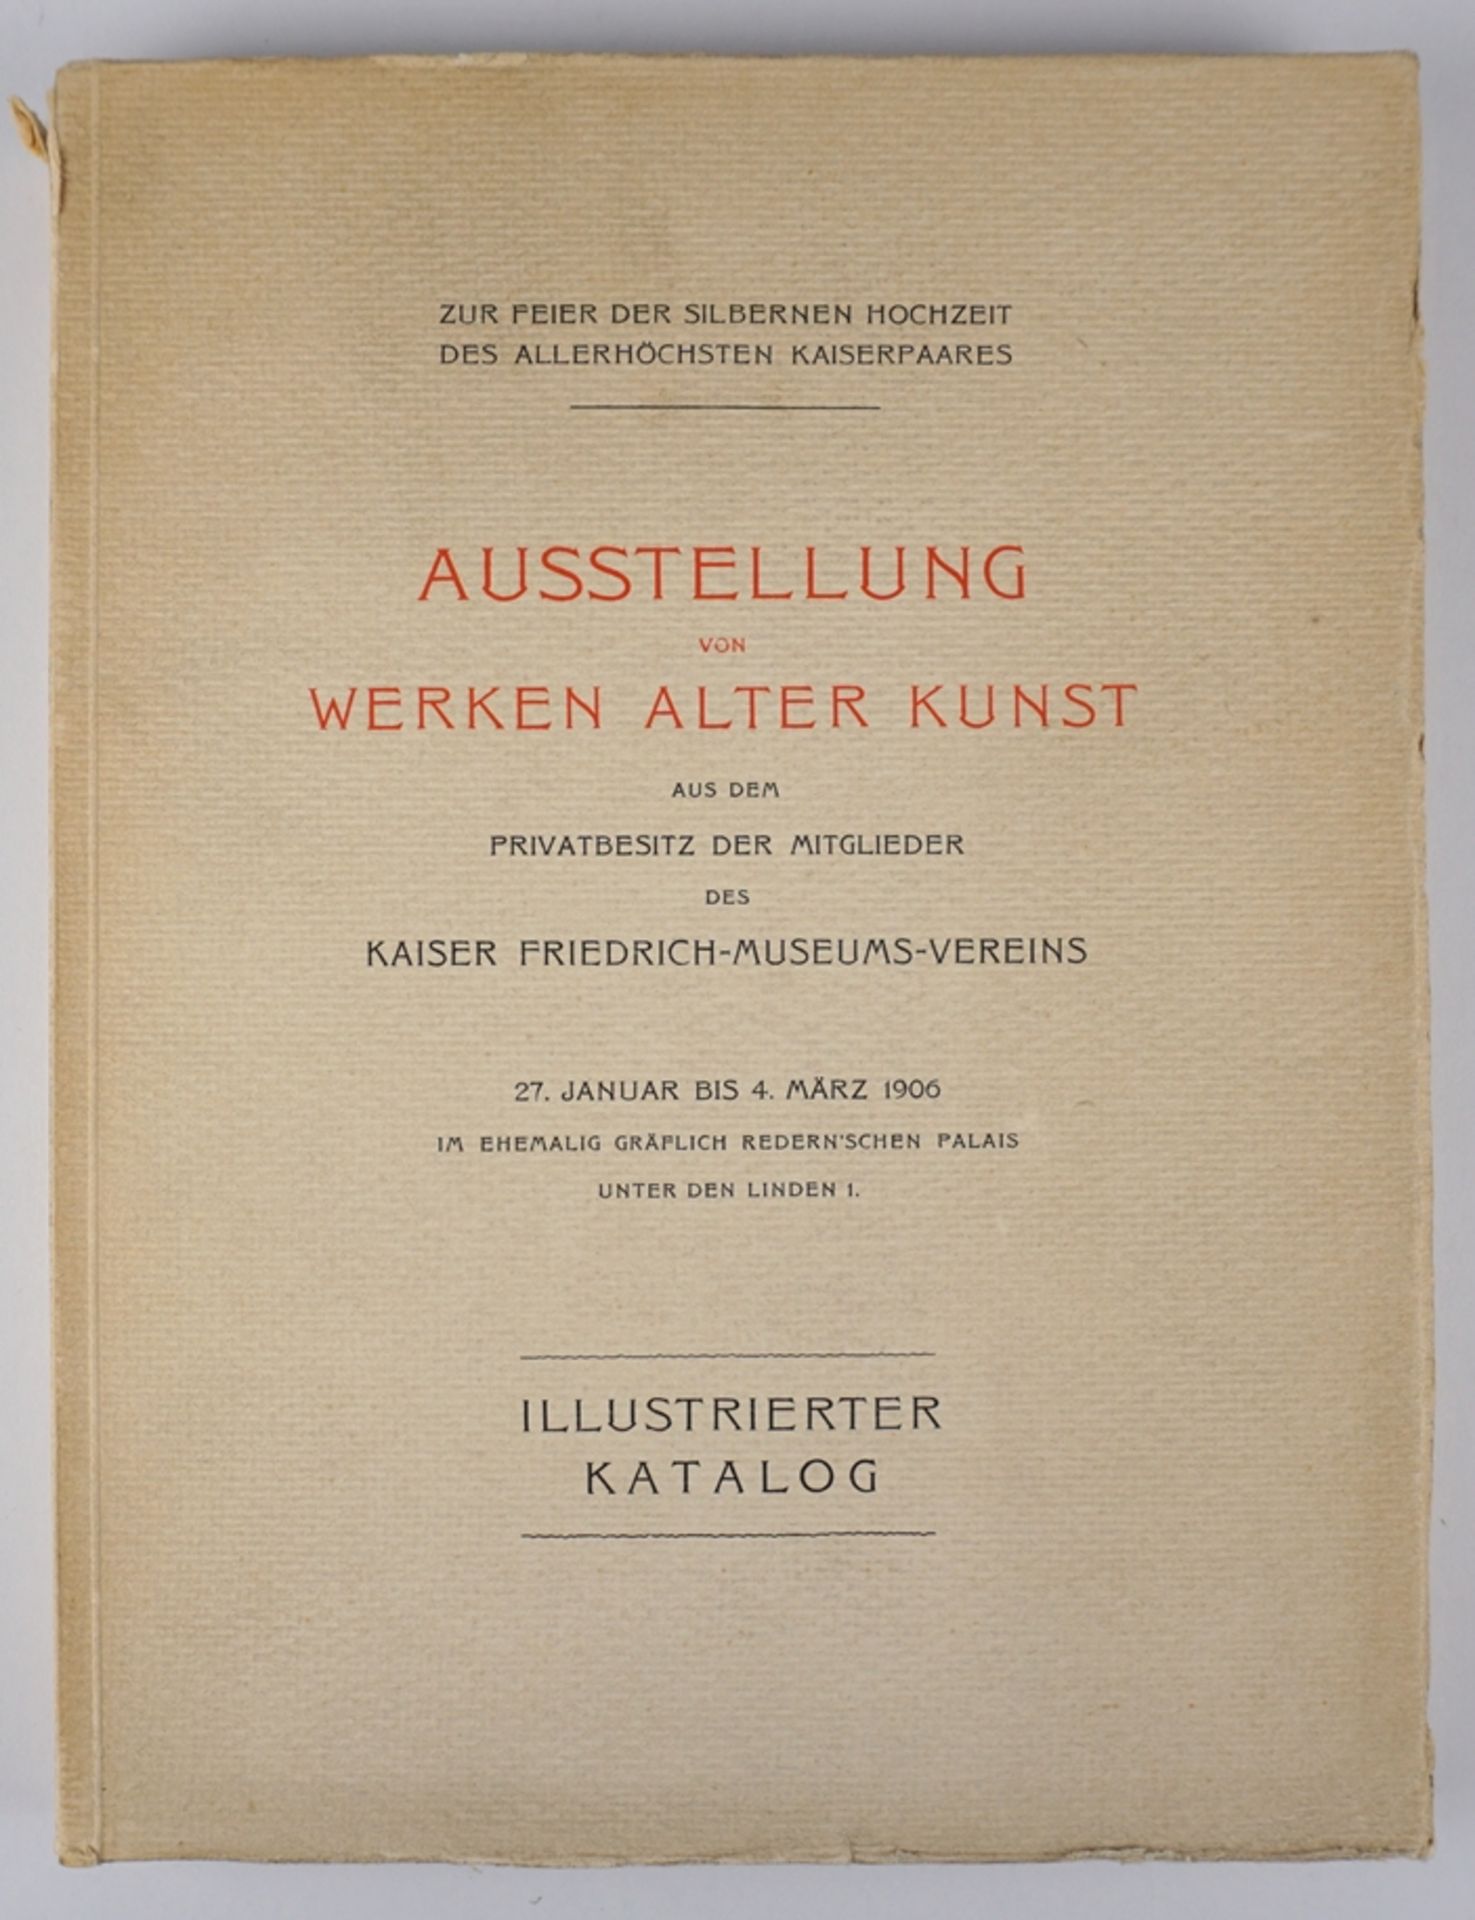 Ausstellung von Werken alter Kunst, Illustrierter Katalog, 1906